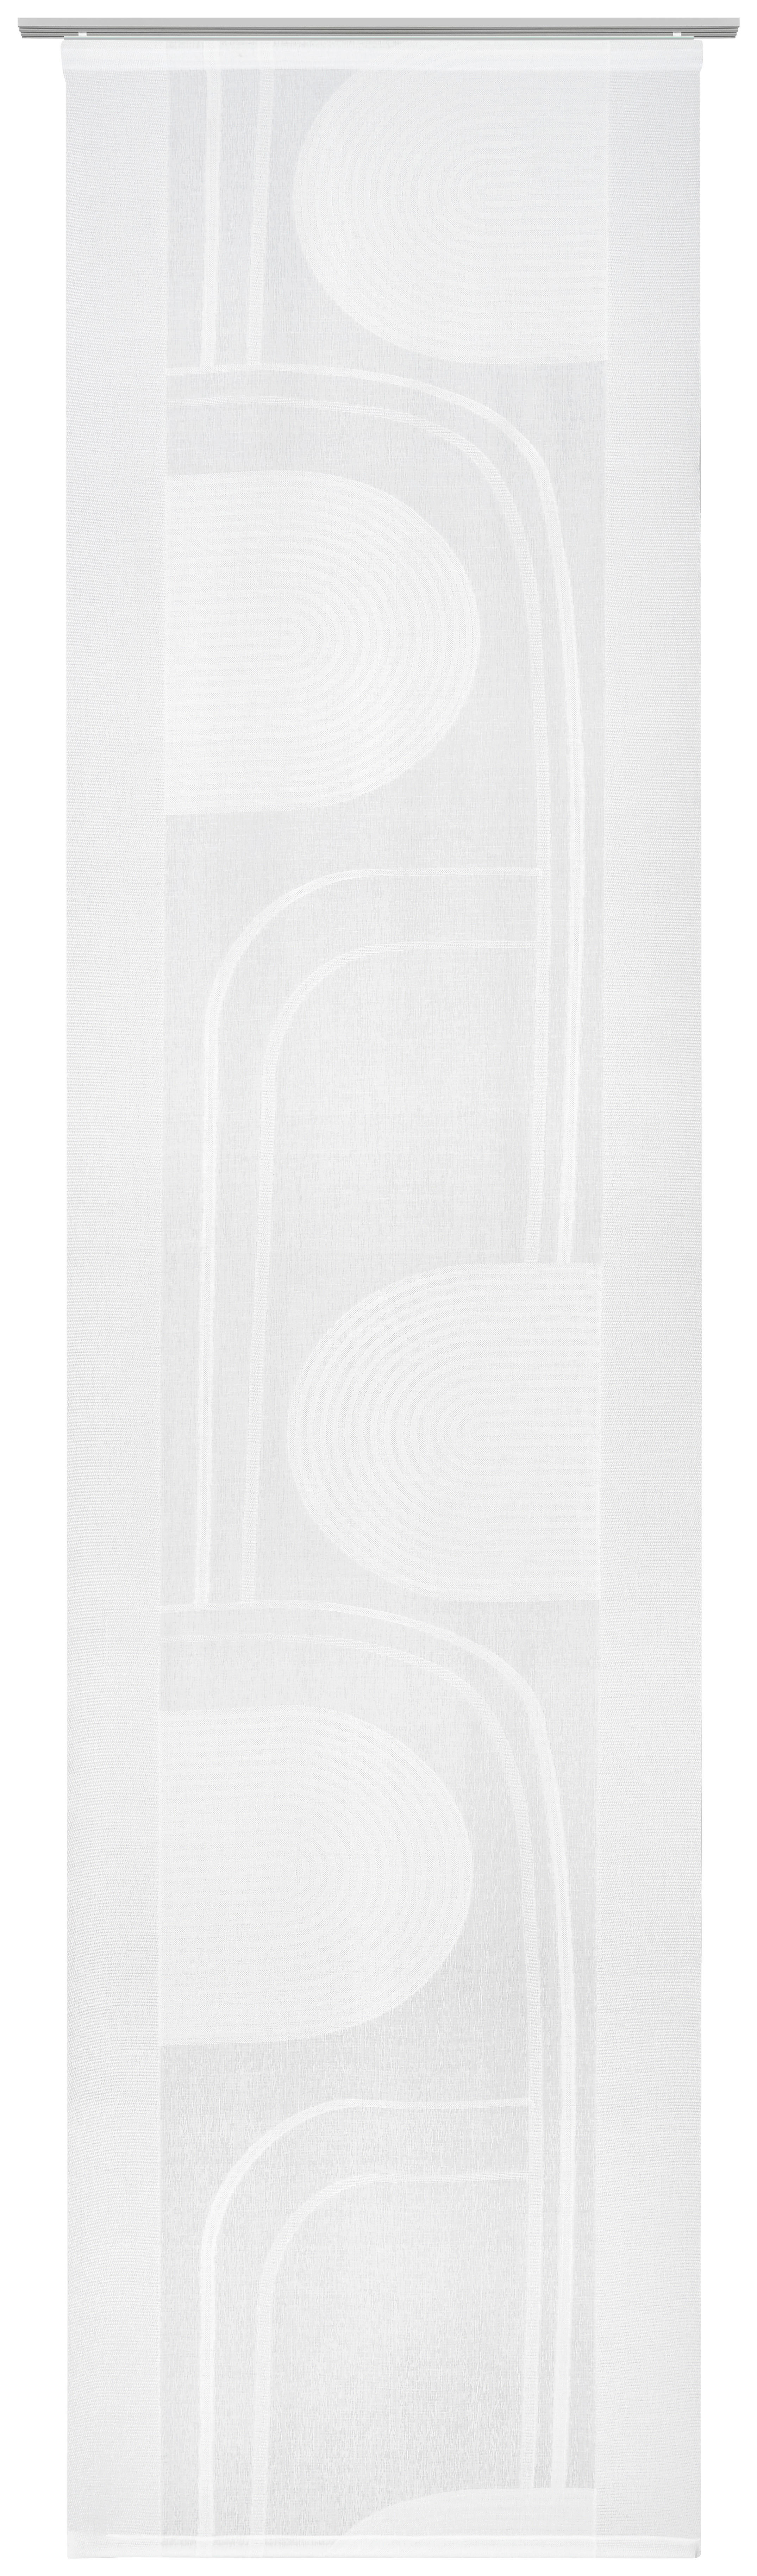 FLÄCHENVORHANG   halbtransparent   60/255 cm  - Naturfarben, MODERN, Textil (60/255cm) - Novel